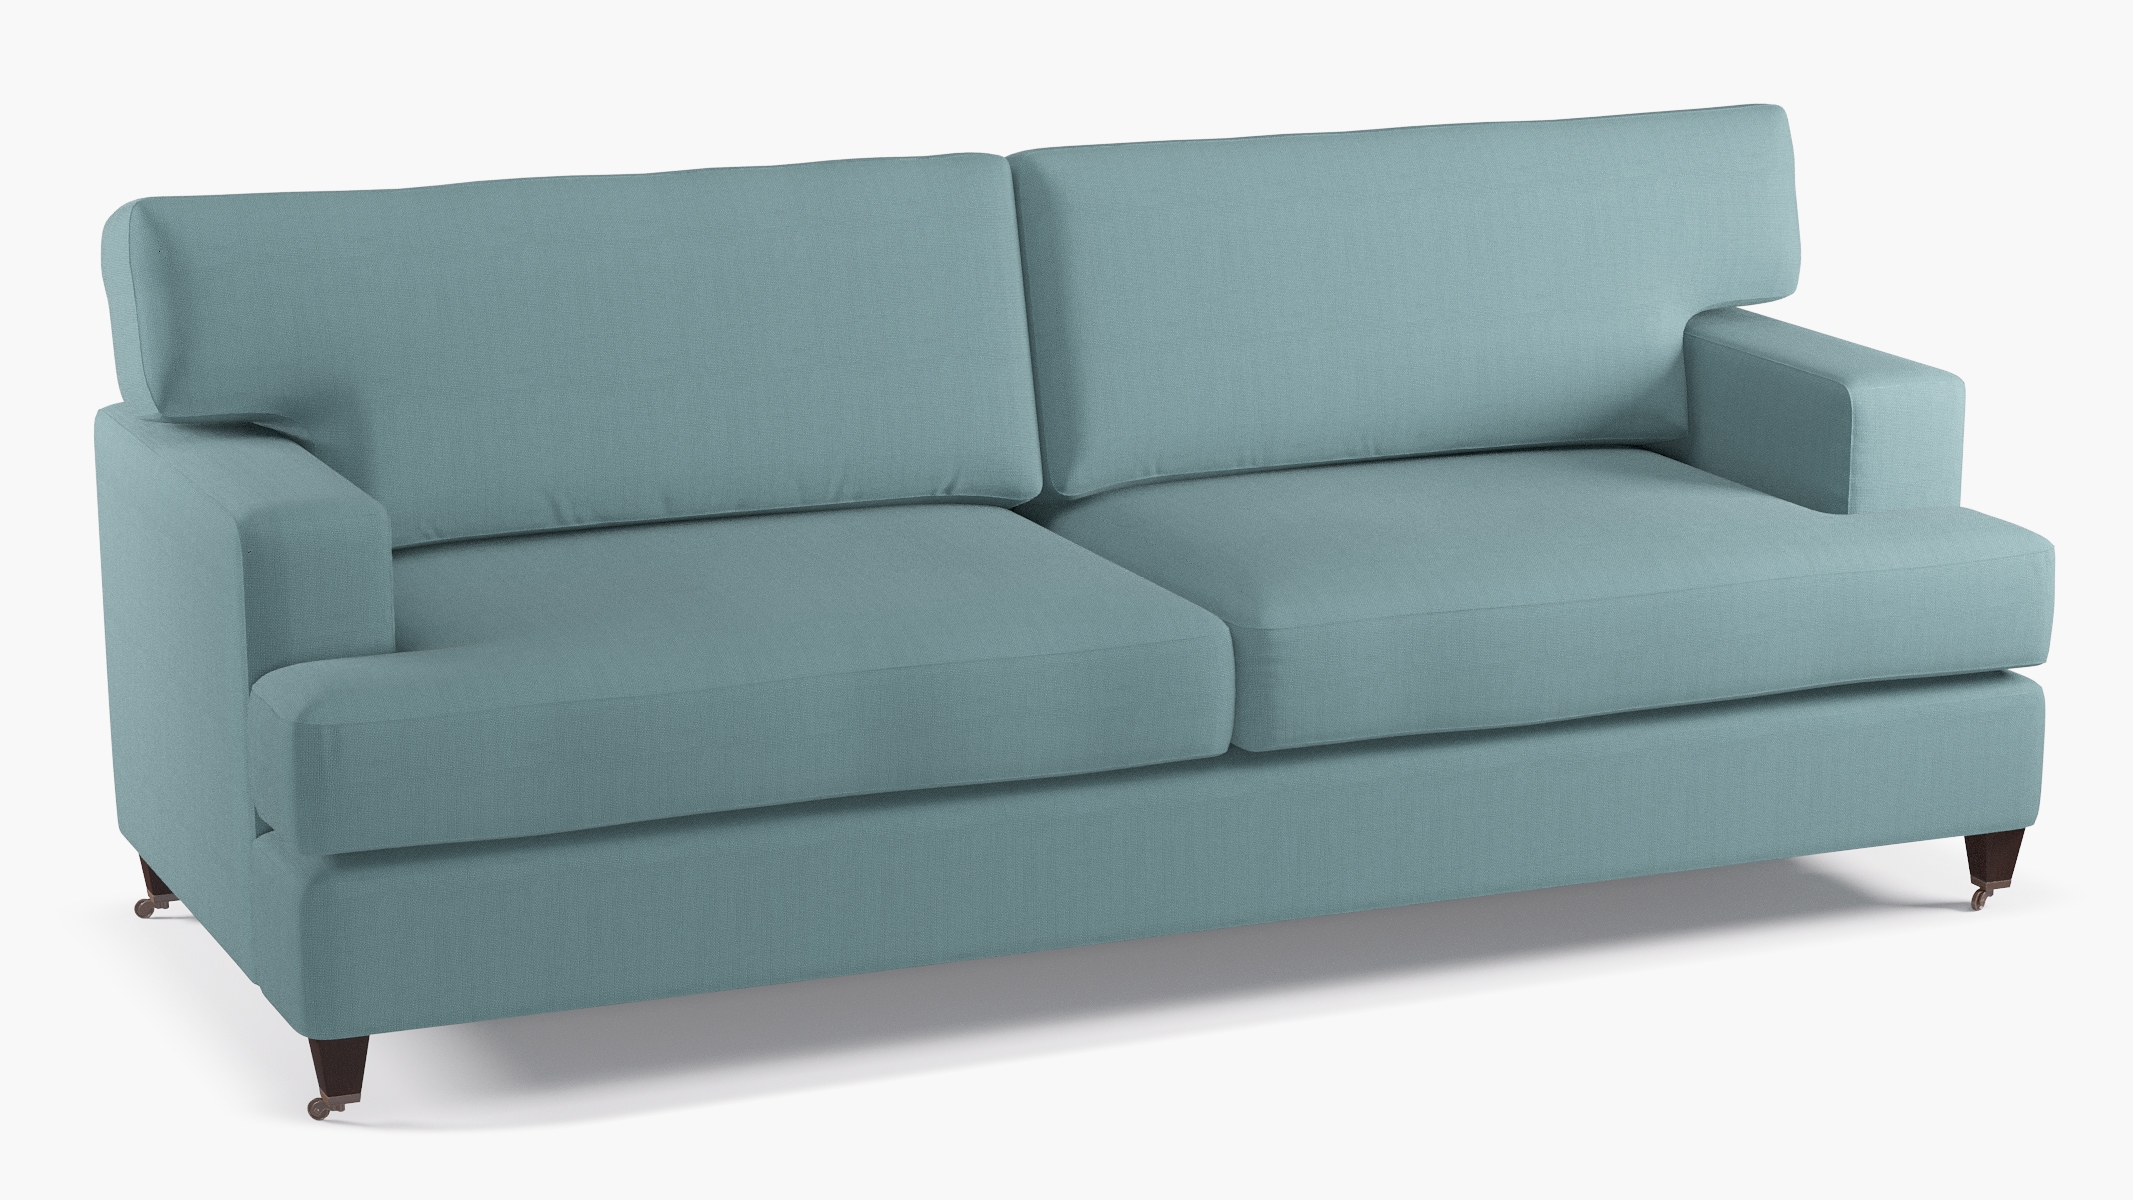 Classic Sofa, Seaglass Everyday Linen, Espresso - Image 1